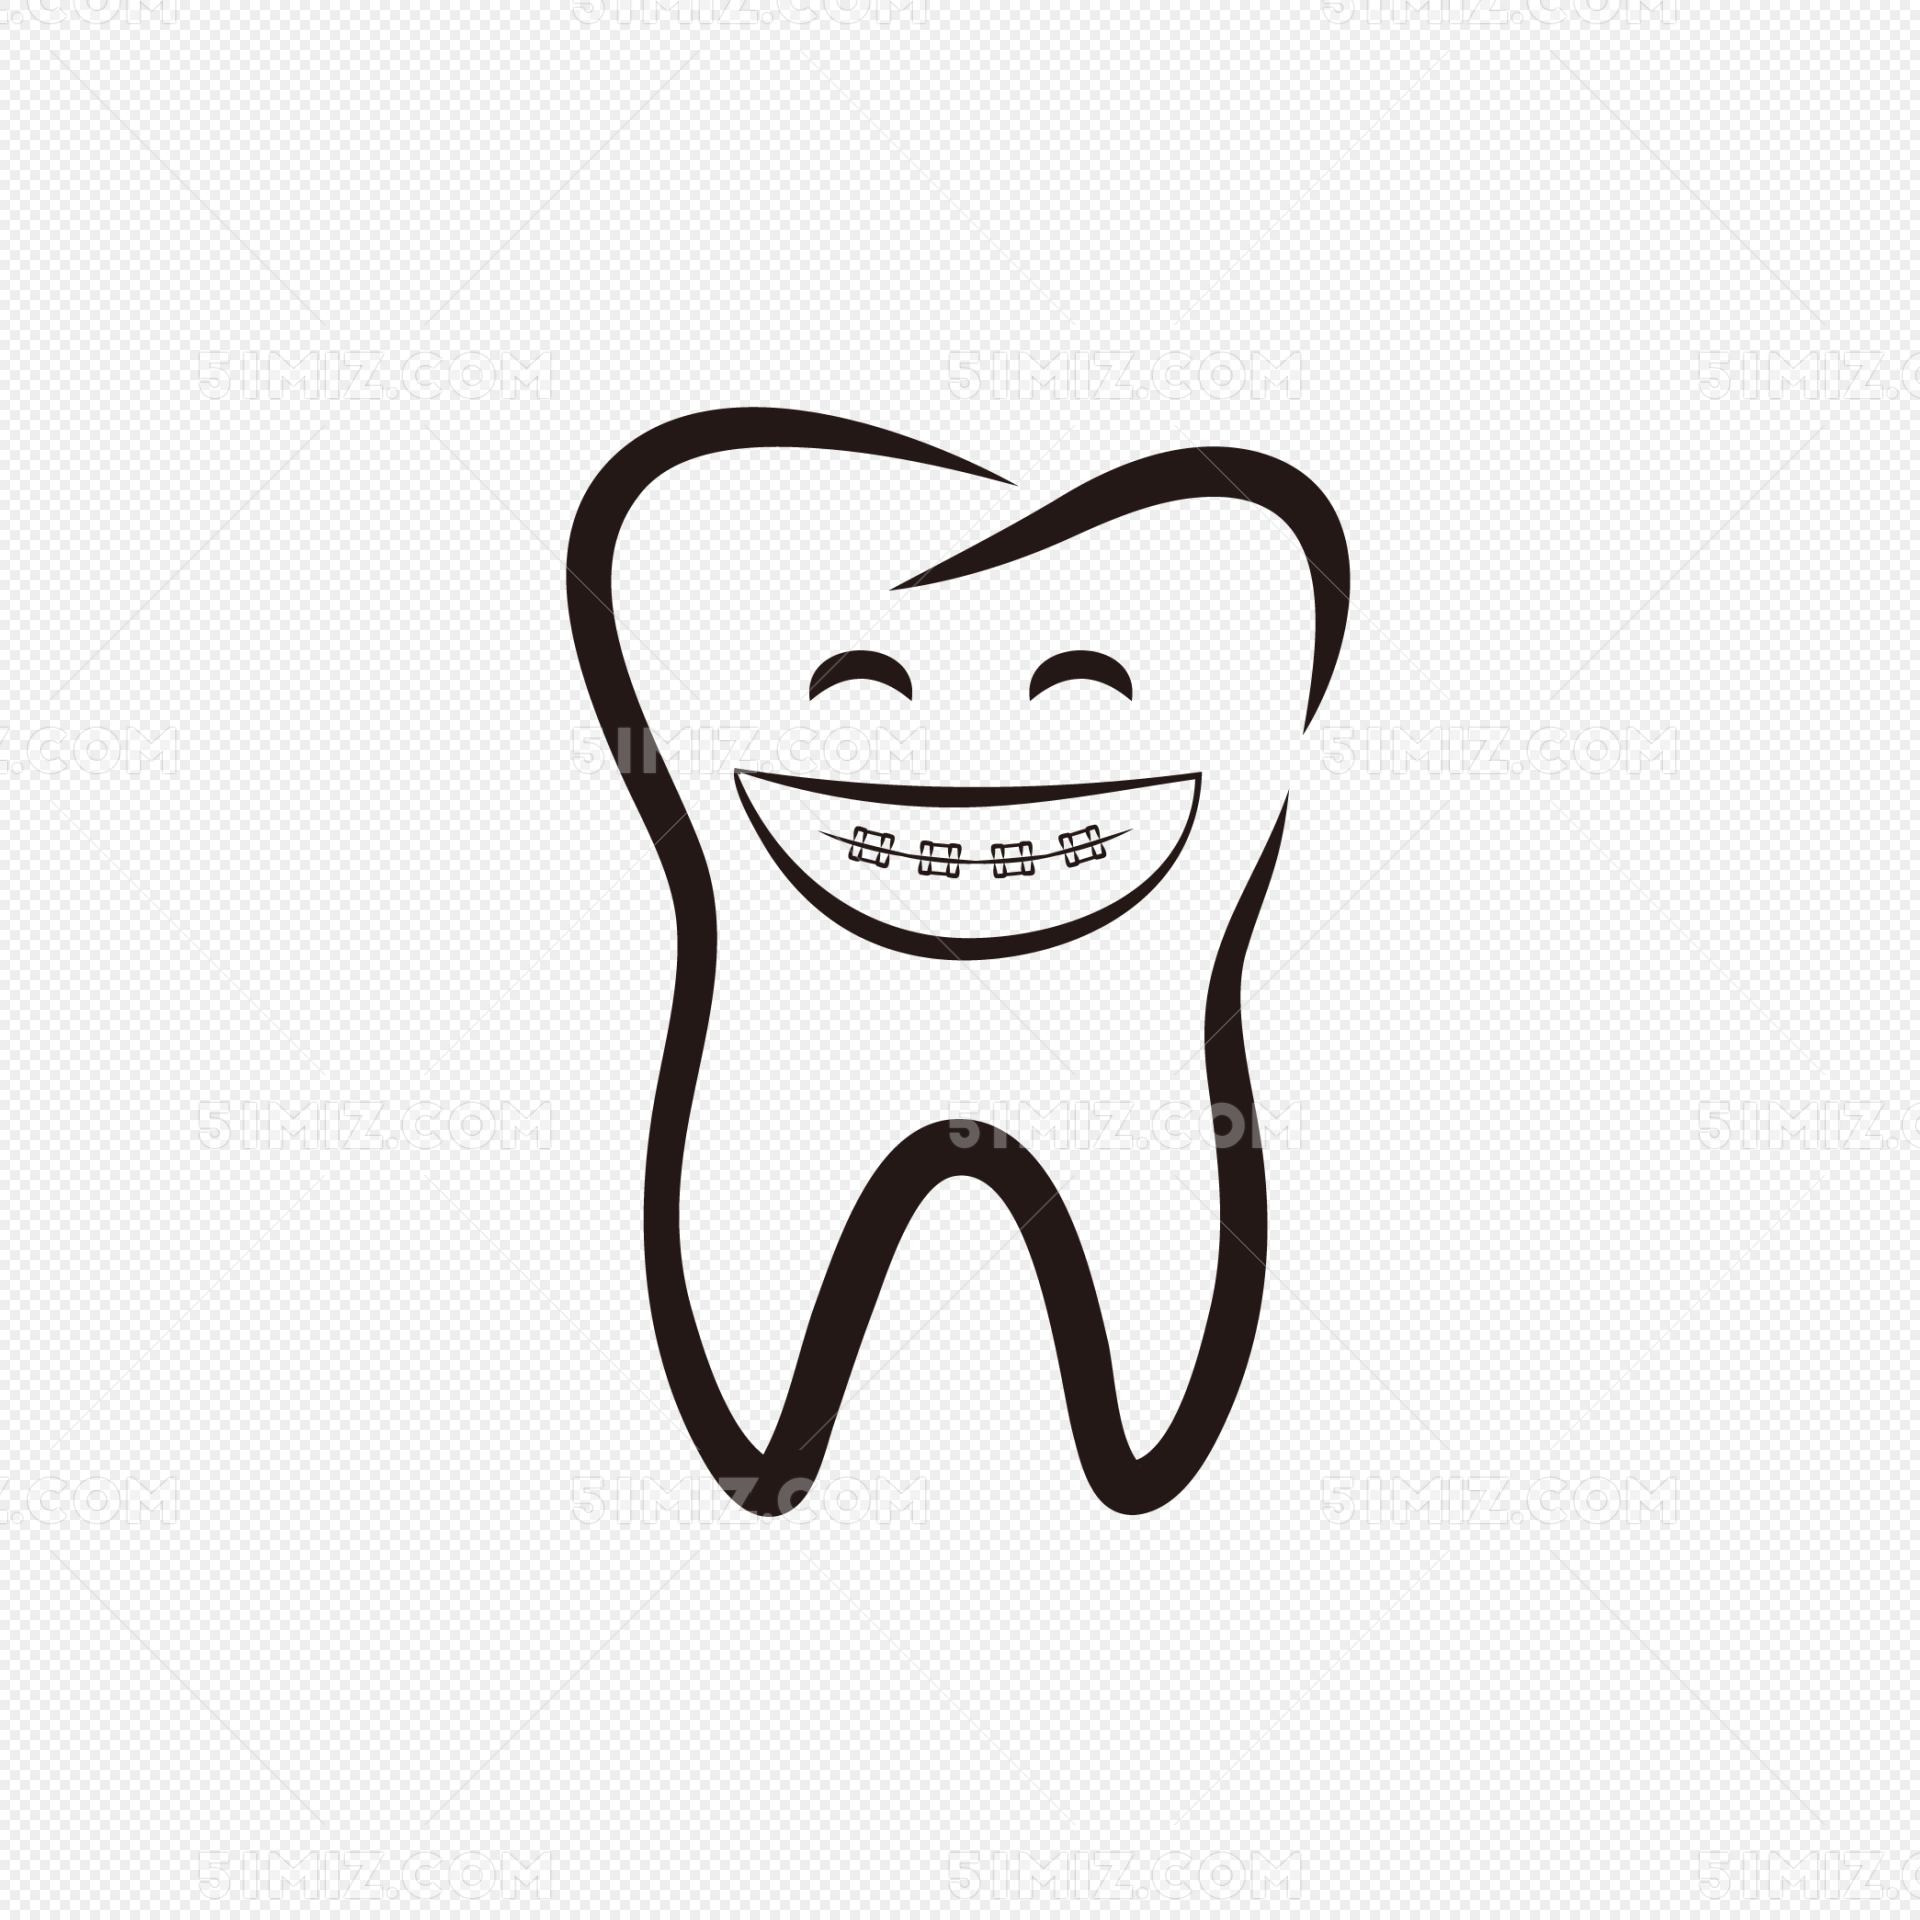 爱牙日牙齿清洁插画图片素材免费下载 - 觅知网